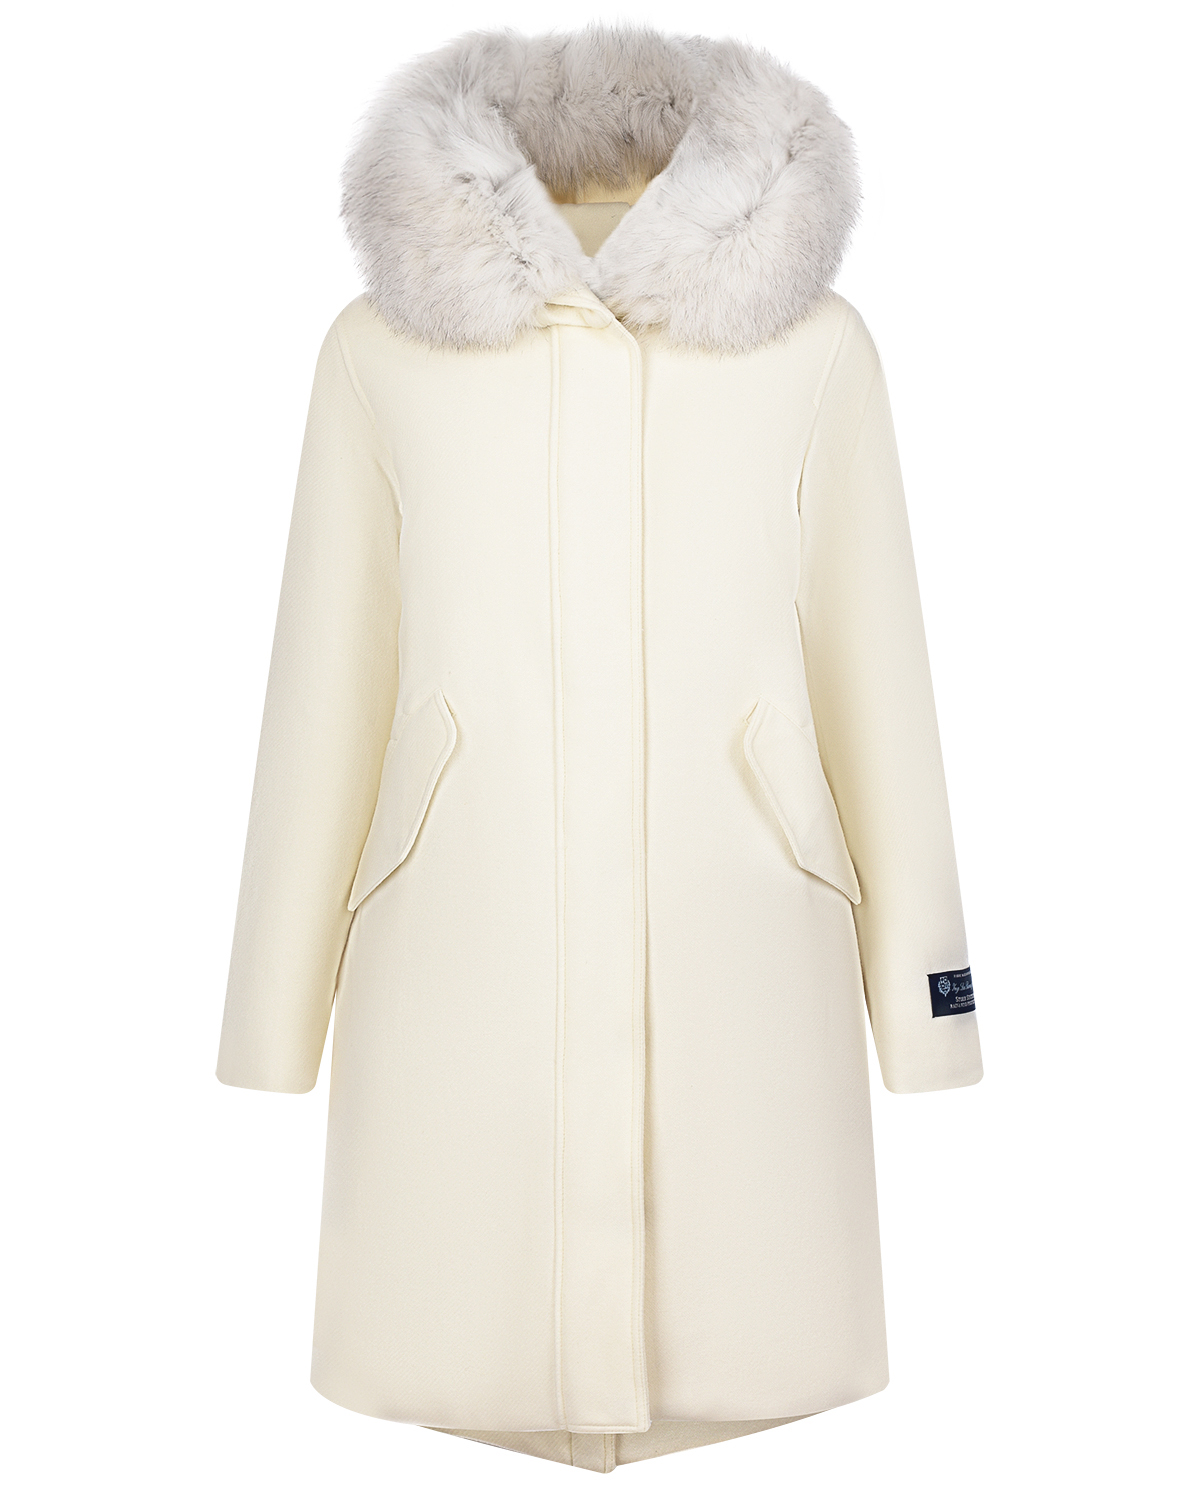 Белое пальто с меховой отделкой Woolrich, размер 42, цвет белый